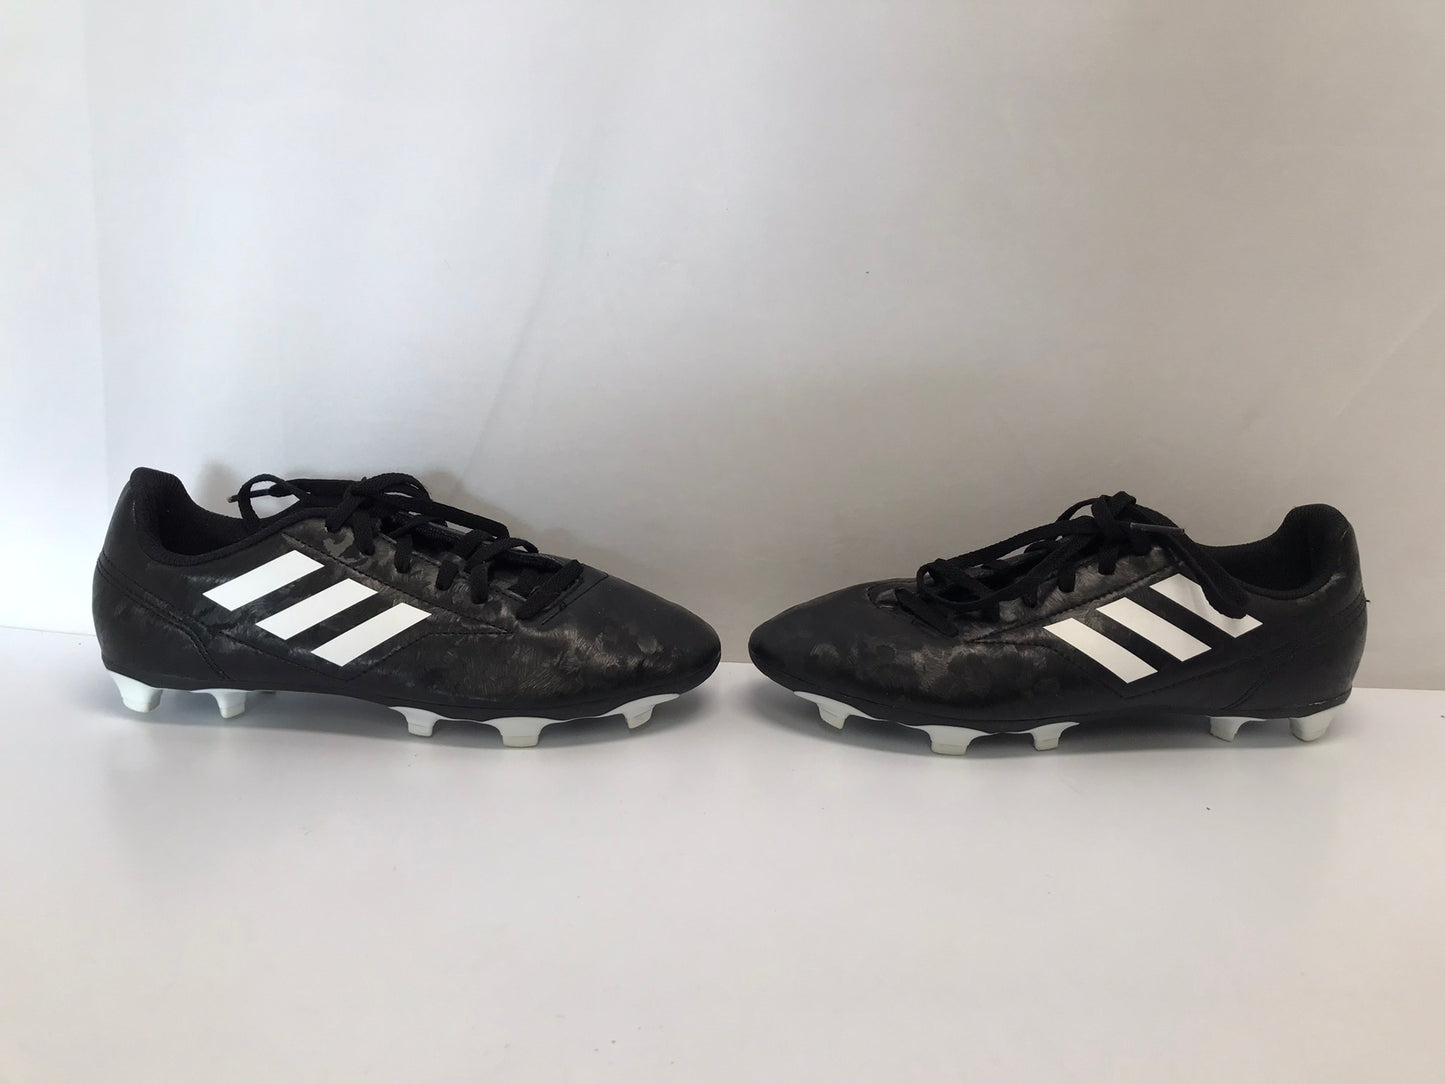 Soccer Shoes Cleats Men's Size 6 Adidas Black White Excellent